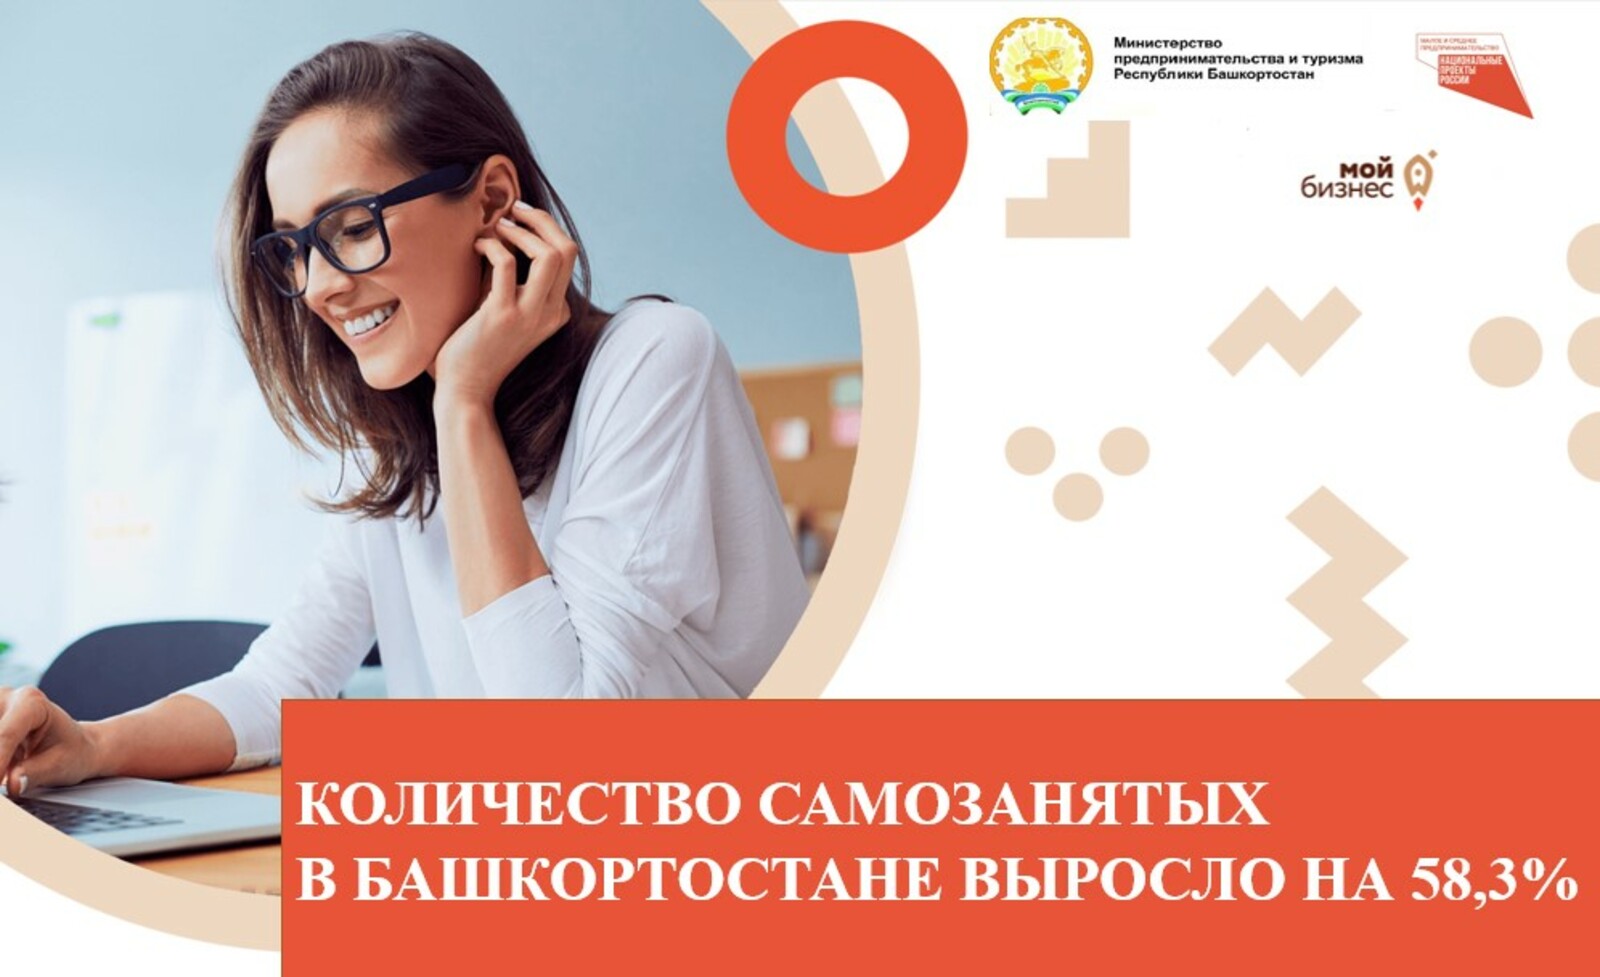 Количество самозанятых в Башкортостане выросло на 58,3%